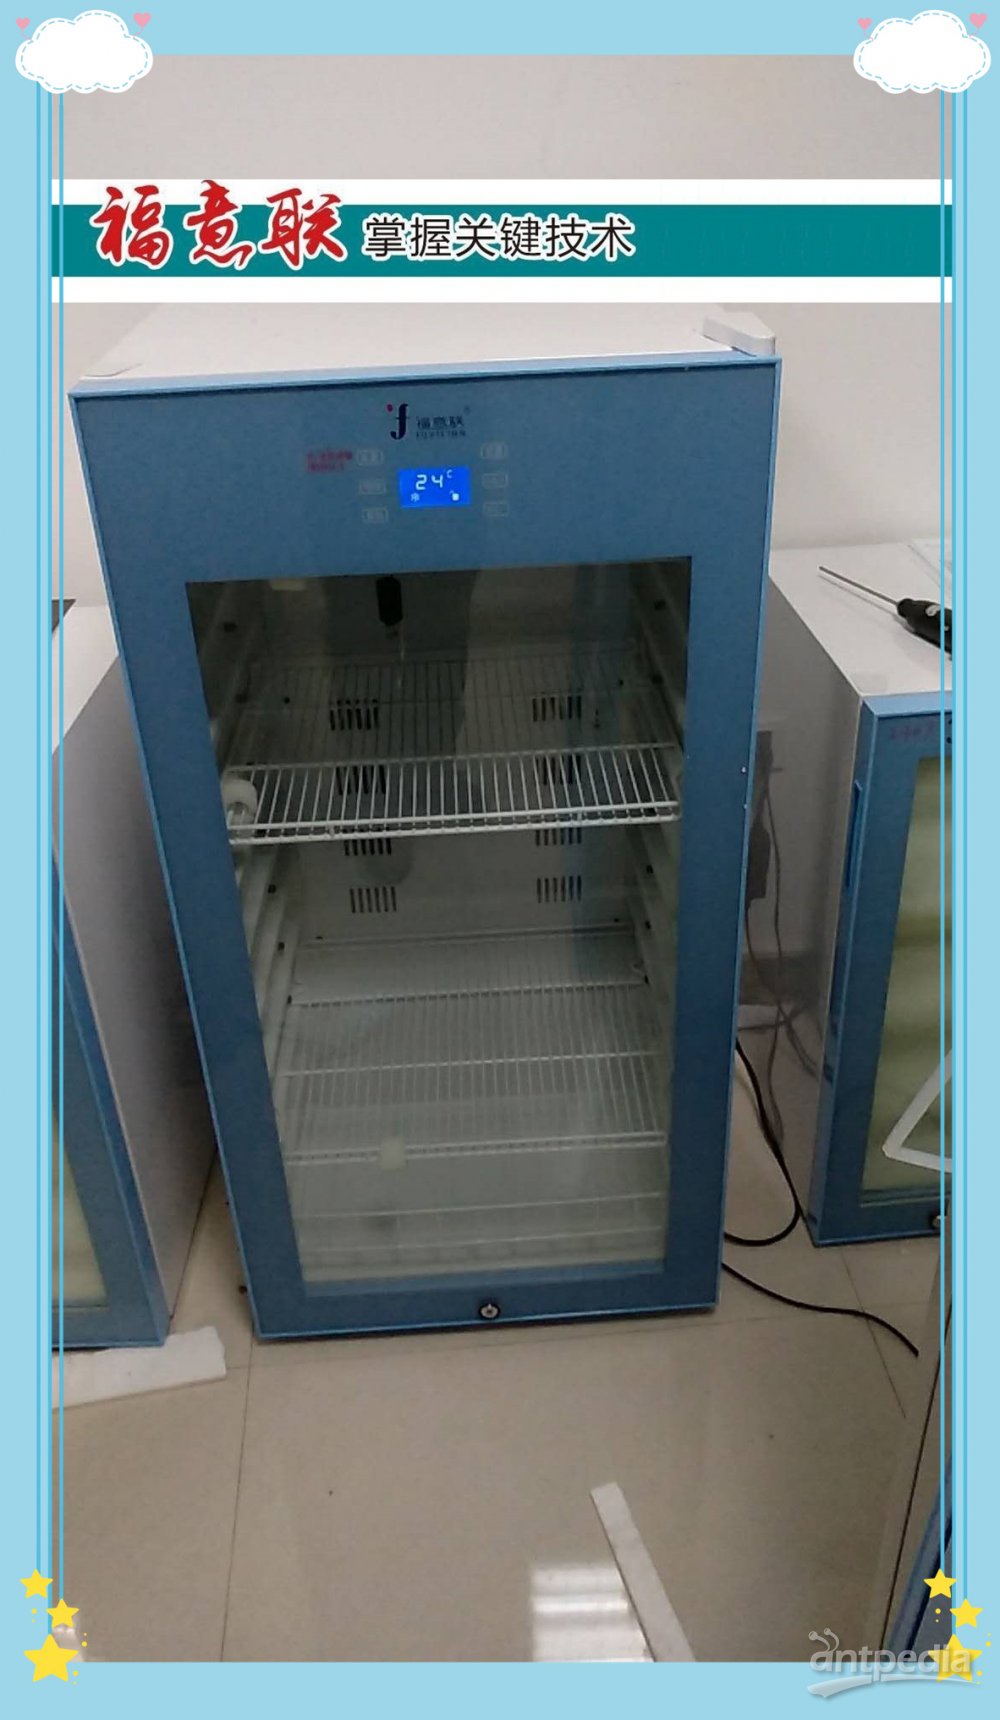 肾脏病理诊断中心多种功能加温箱柜FYL-YS-50LL